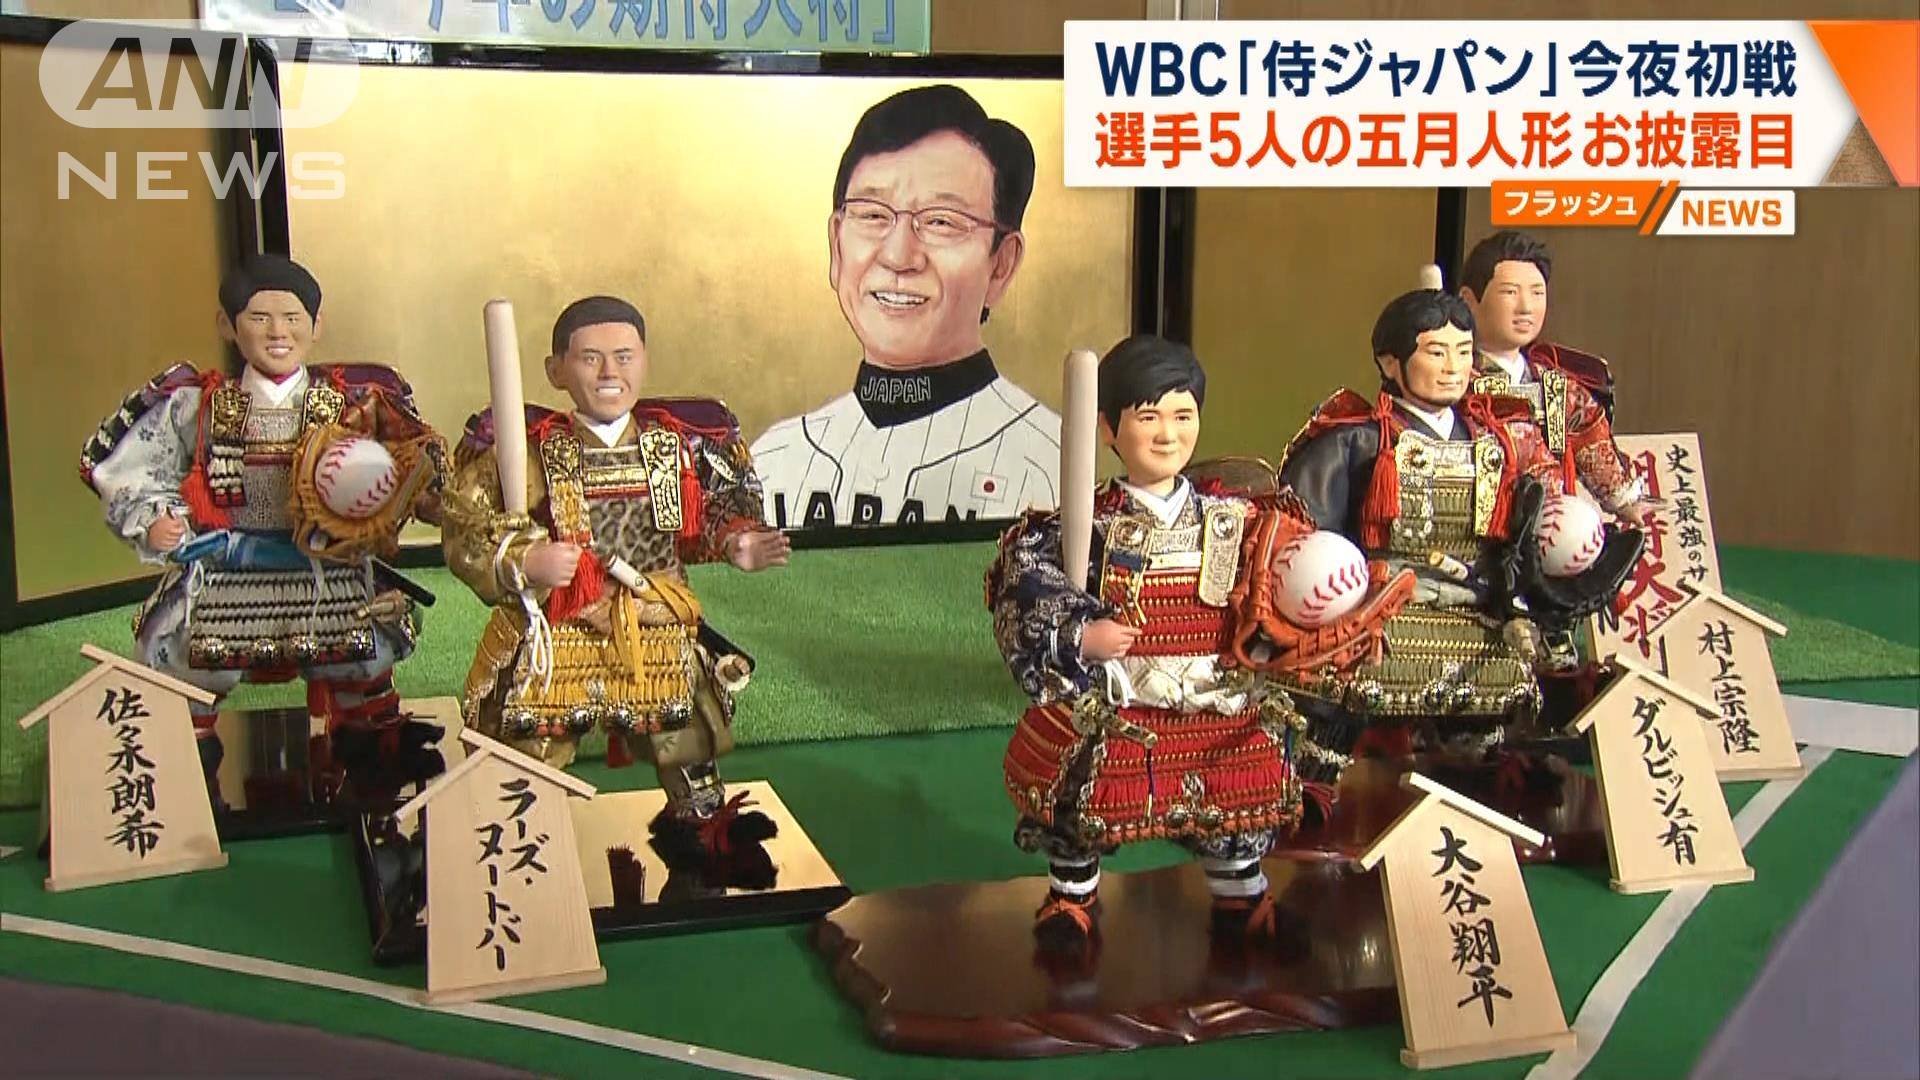 WBC「侍ジャパン」初戦へ 大谷ら五月人形お披露目